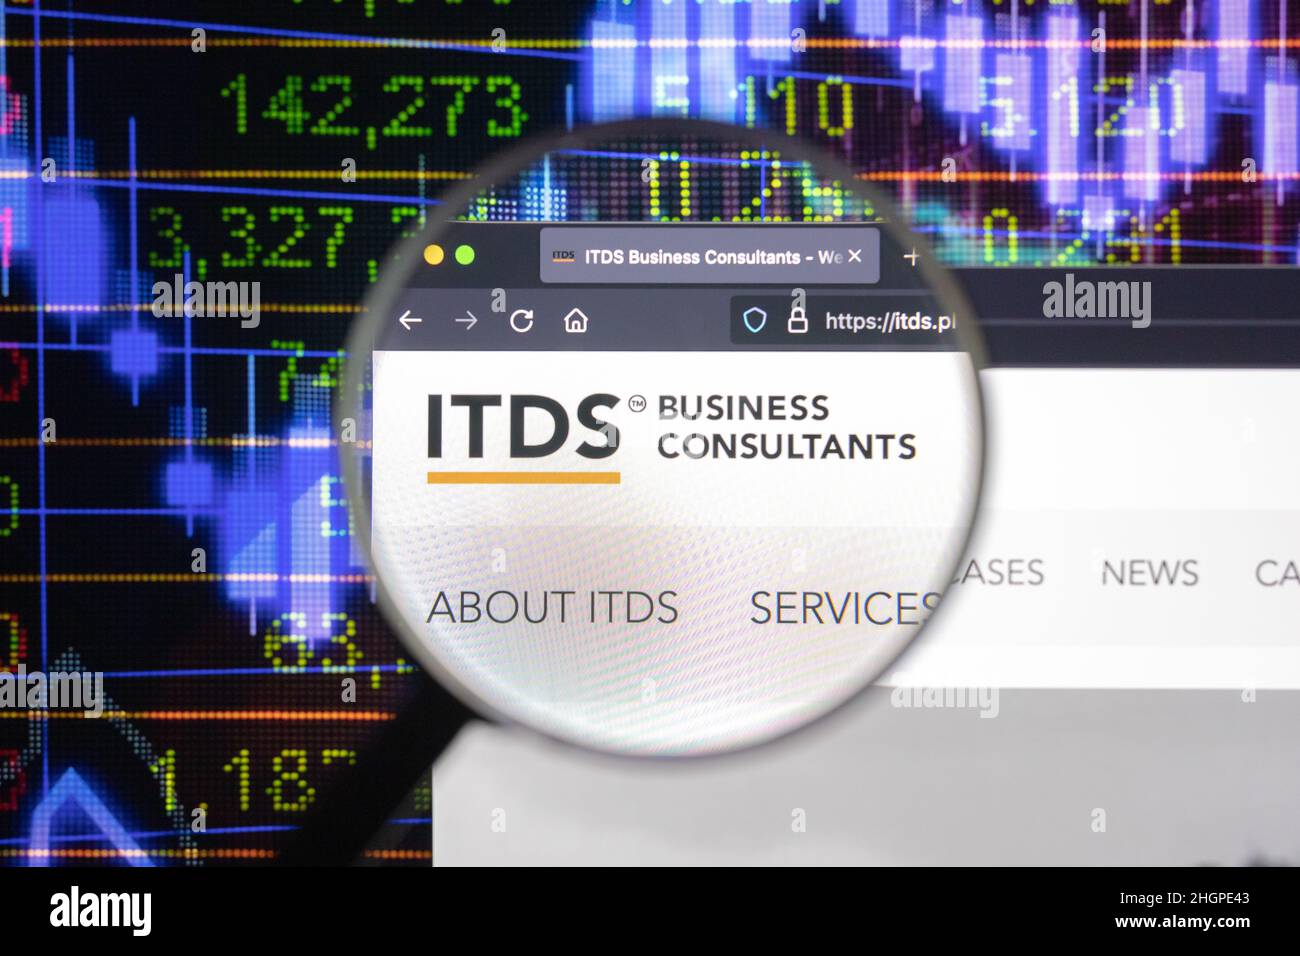 ITDS Business Consultants logo azienda su un sito web con blurry sviluppi del mercato azionario in background, visto su uno schermo del computer Foto Stock